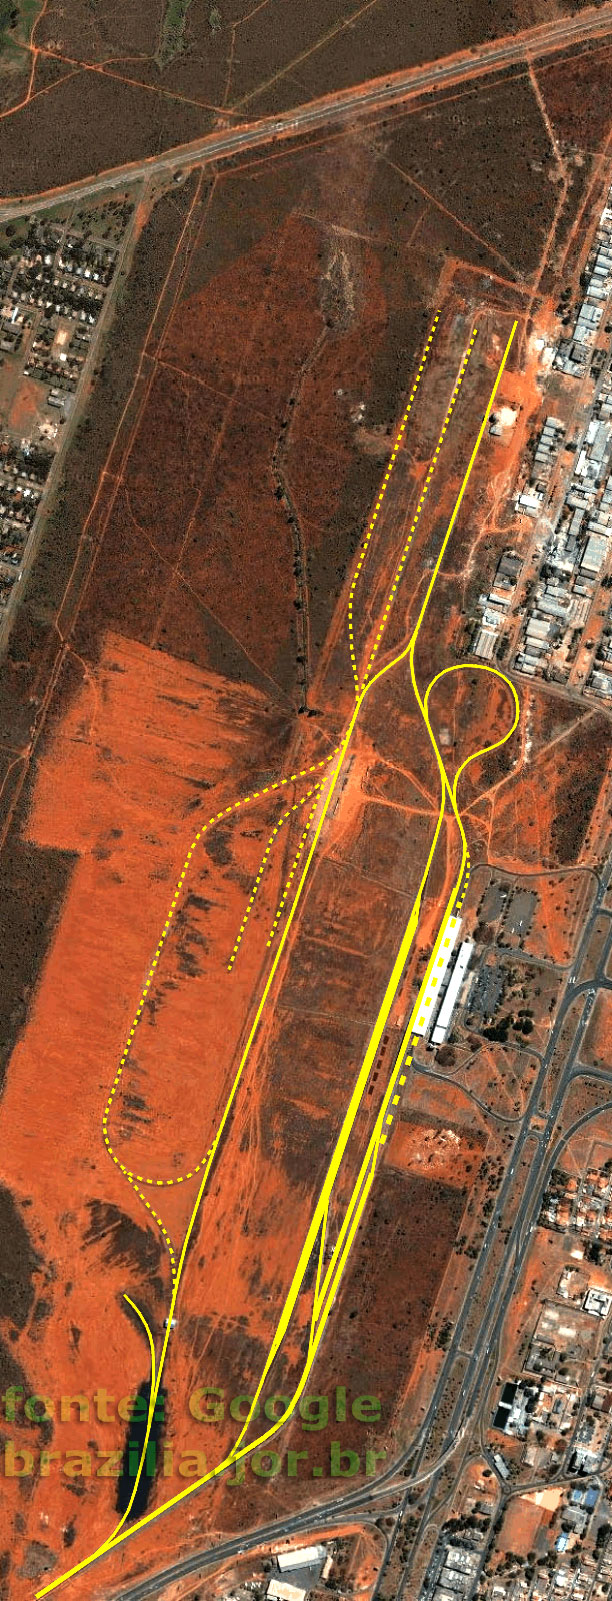 Vista de satélite da distribuição dos trilhos do pátio ferroviário na esplanada da estação de trem